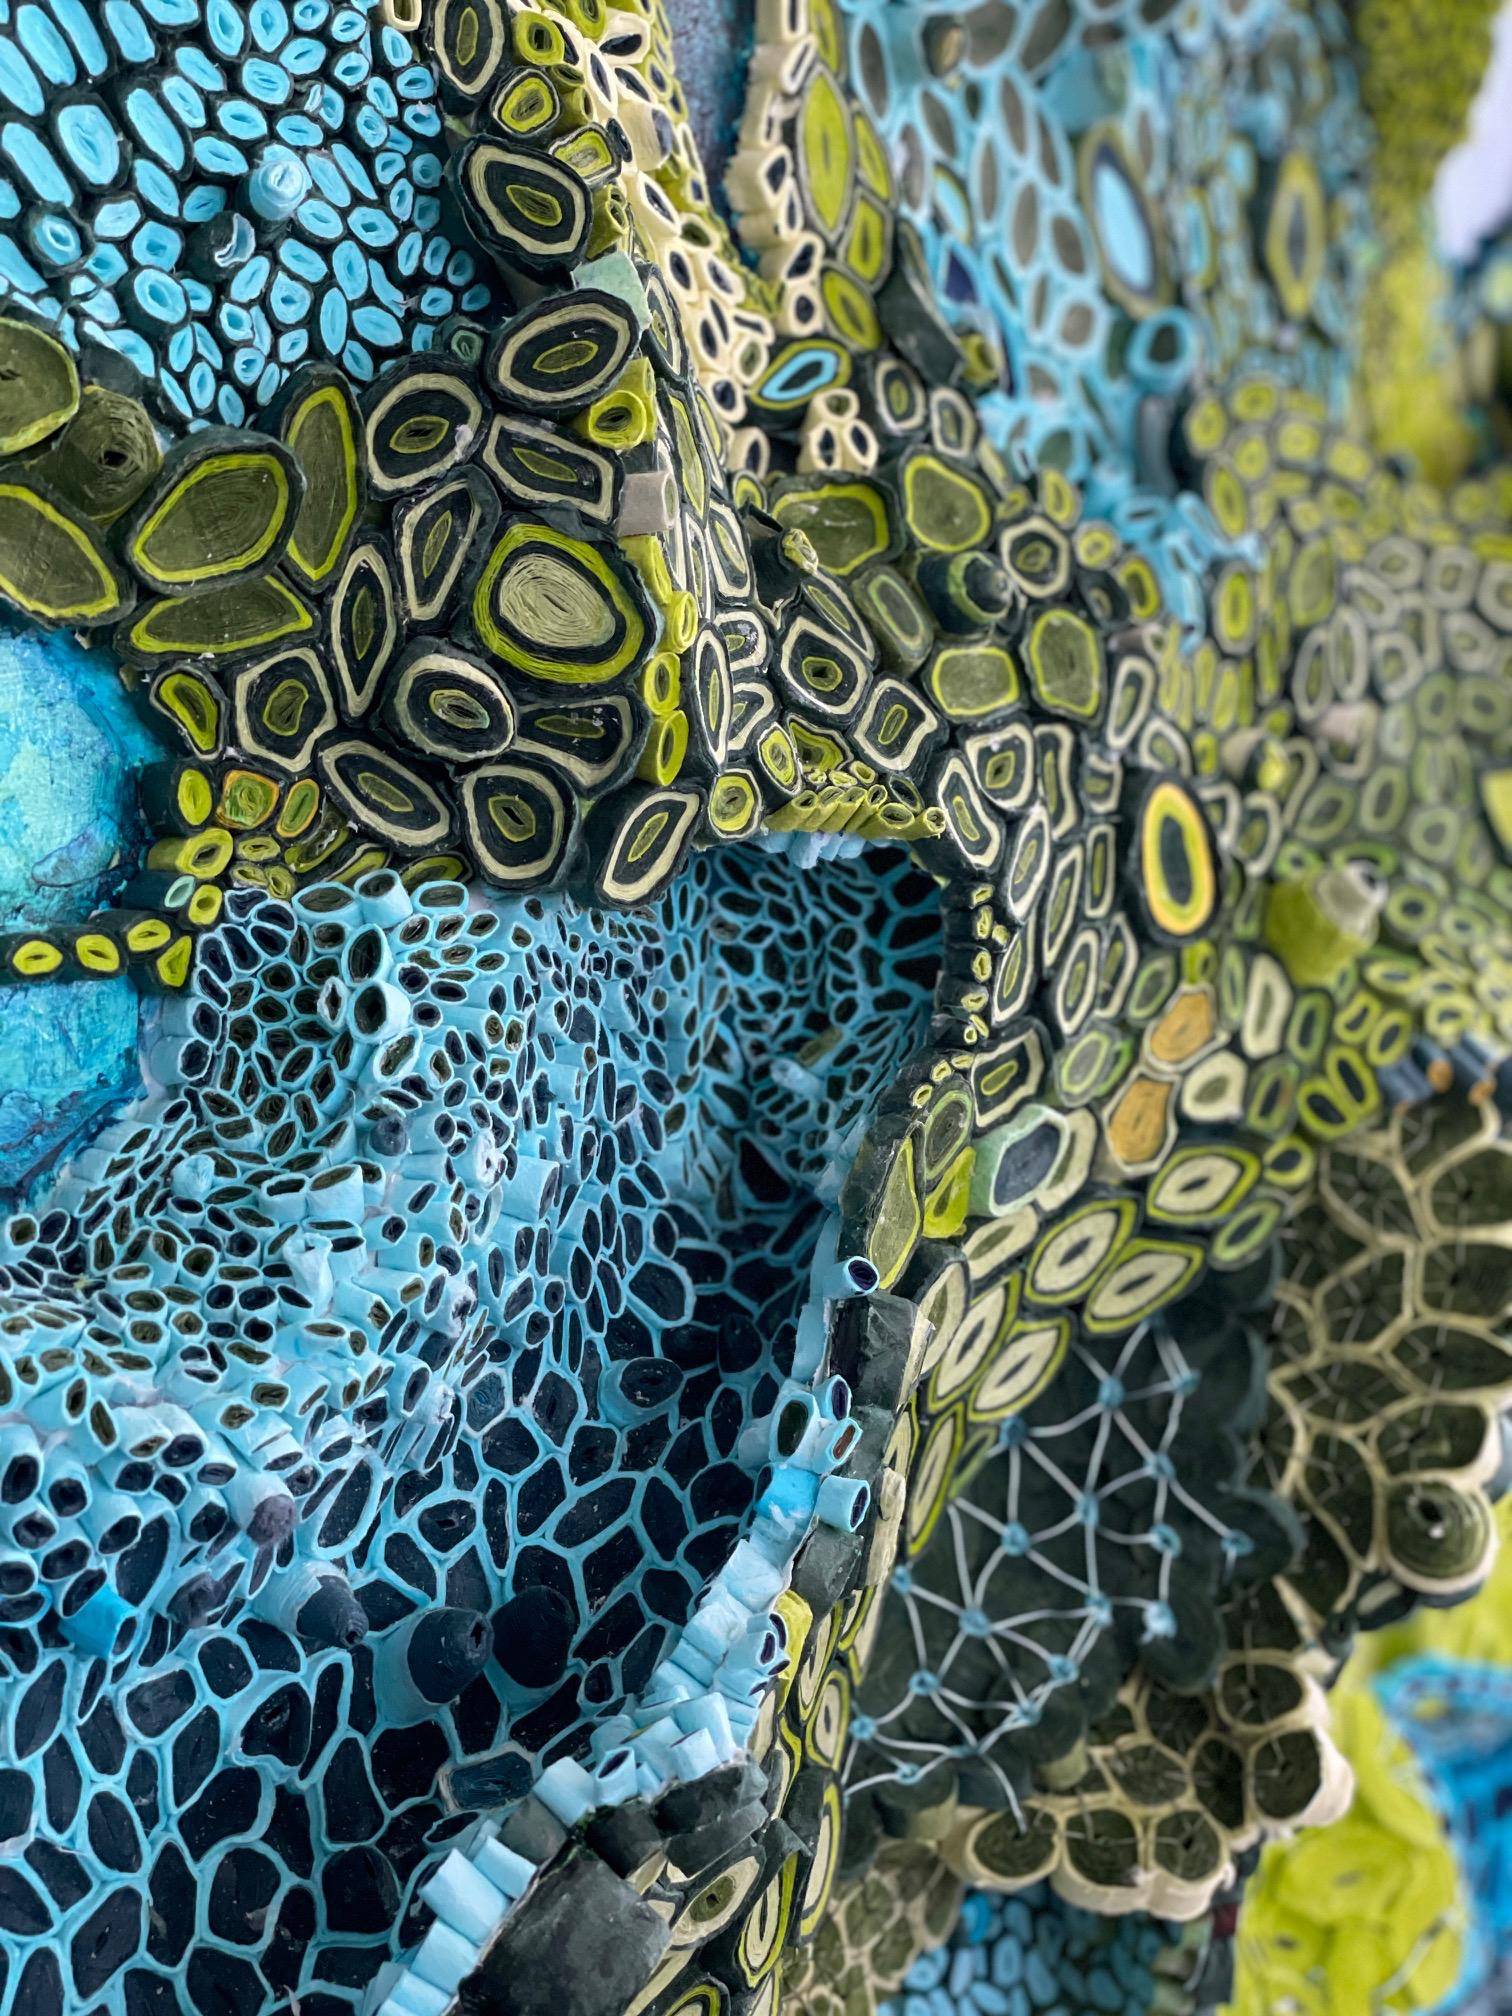 L'artiste multimédia Amy Genser réalise des collages de papier dimensionnels. Ces pièces murales colorées et texturées, uniques en leur genre, incarnent le mouvement et les processus. Elle manipule magistralement le papier - chaque pièce étant